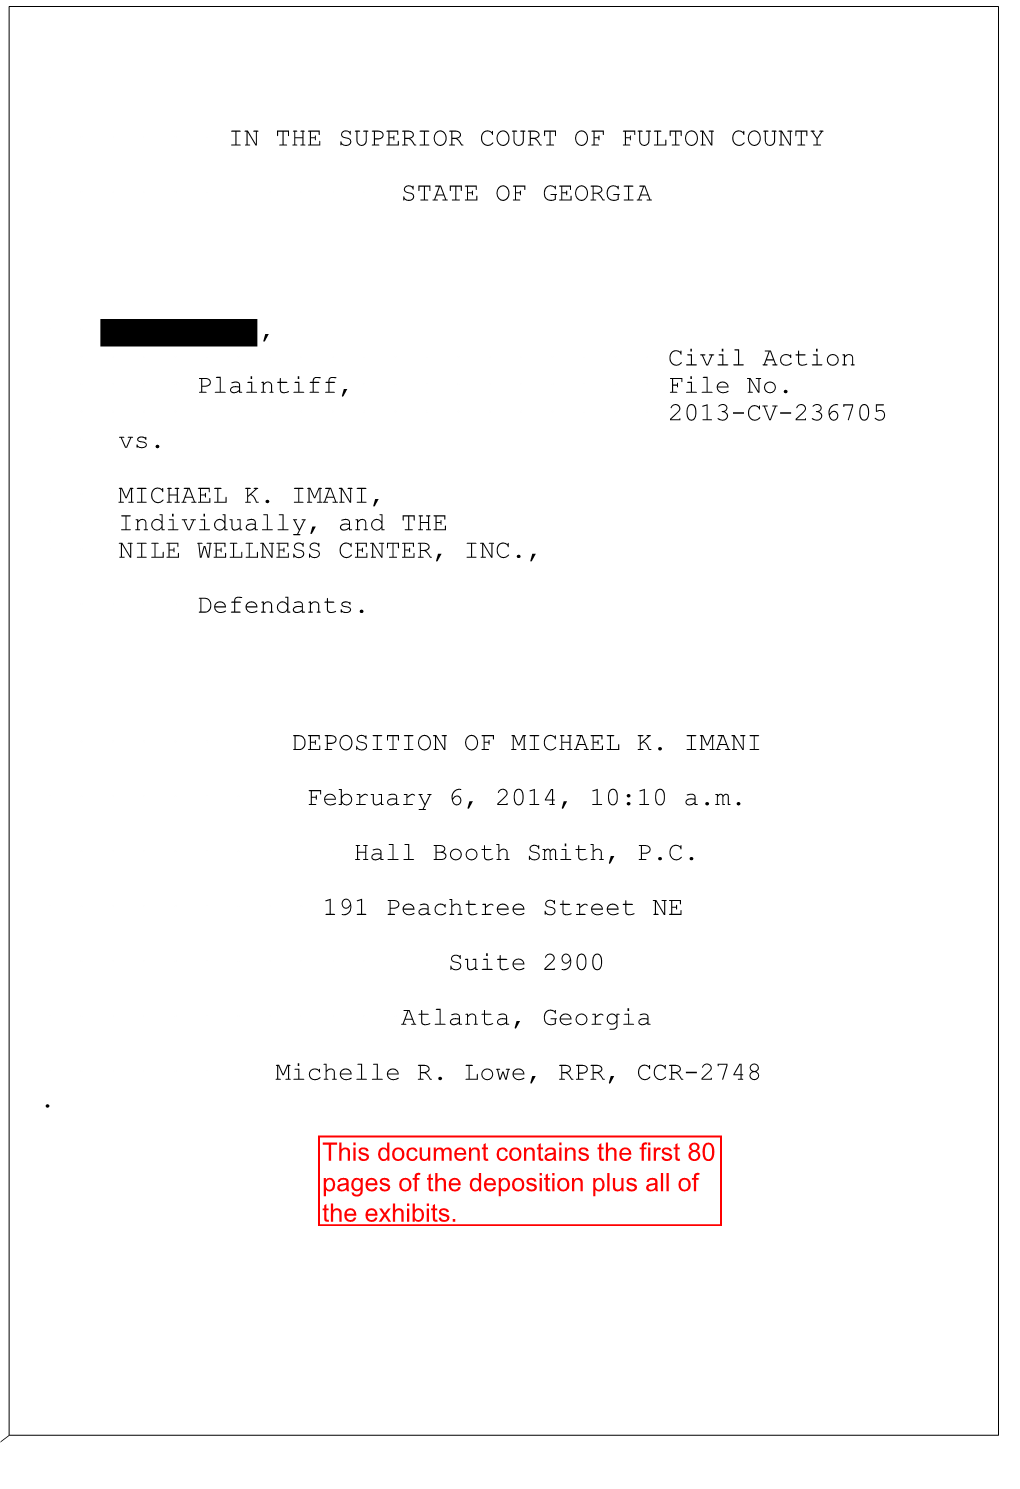 Deposition of Michael Imani